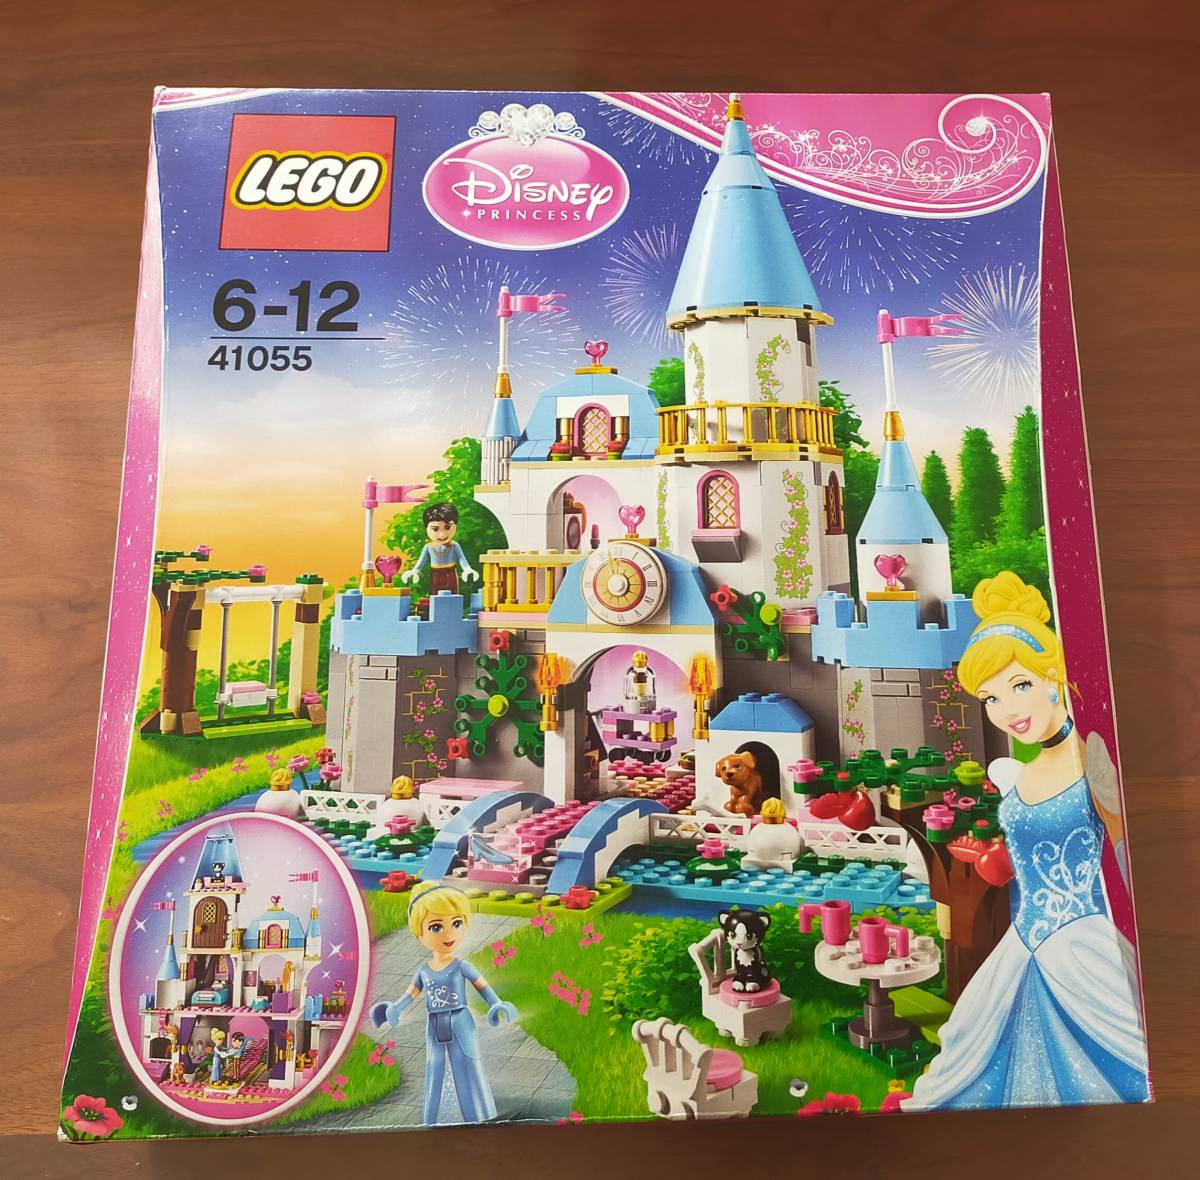 値引き 交渉 未開封 レゴ leg0 41055 シンデレラの城 ディズニープリンセス キャラクターグッズ